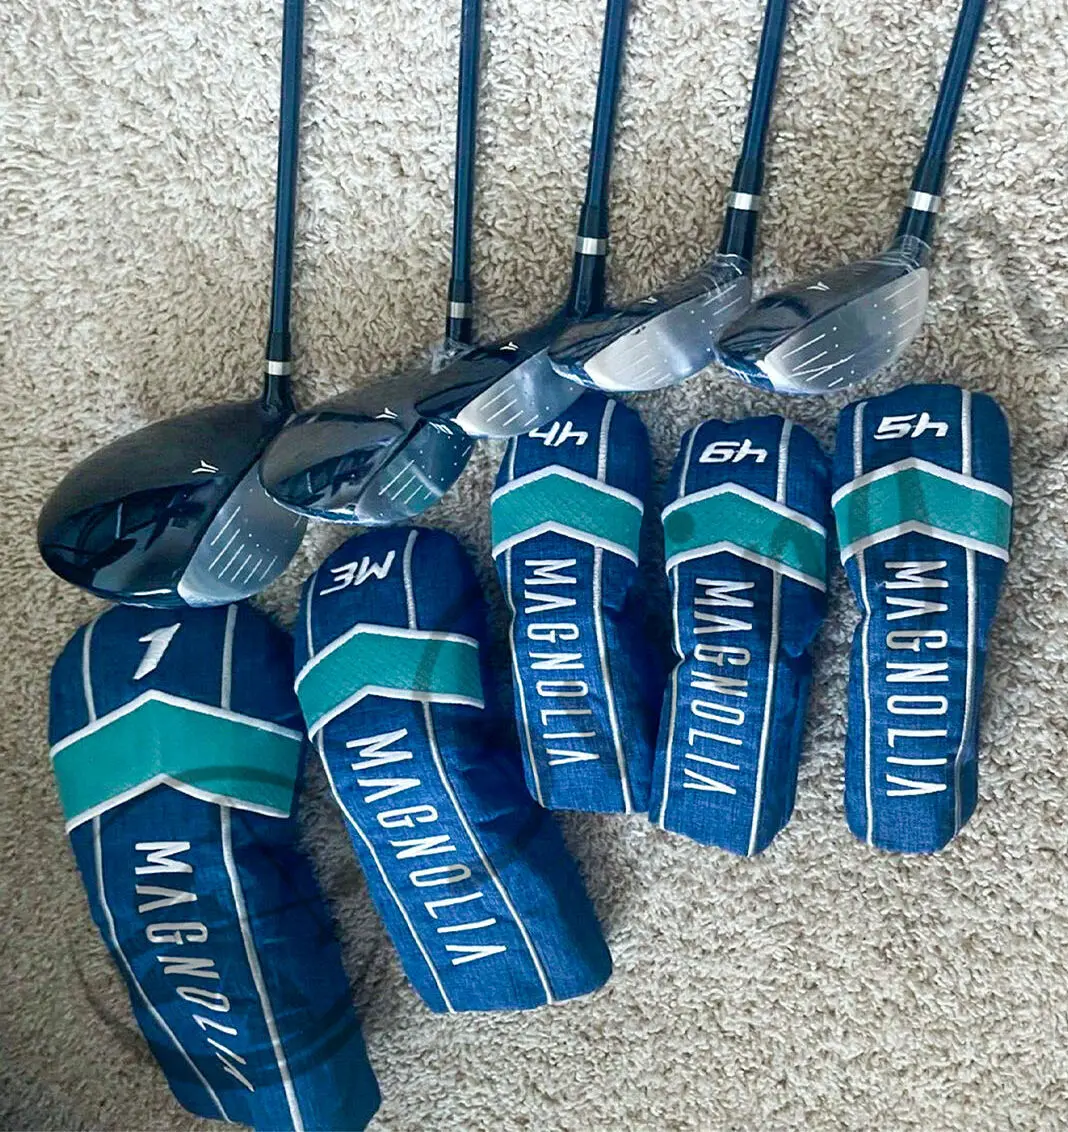 Wilson Magnolia Package Golf Complete Set - Ladies, Navy